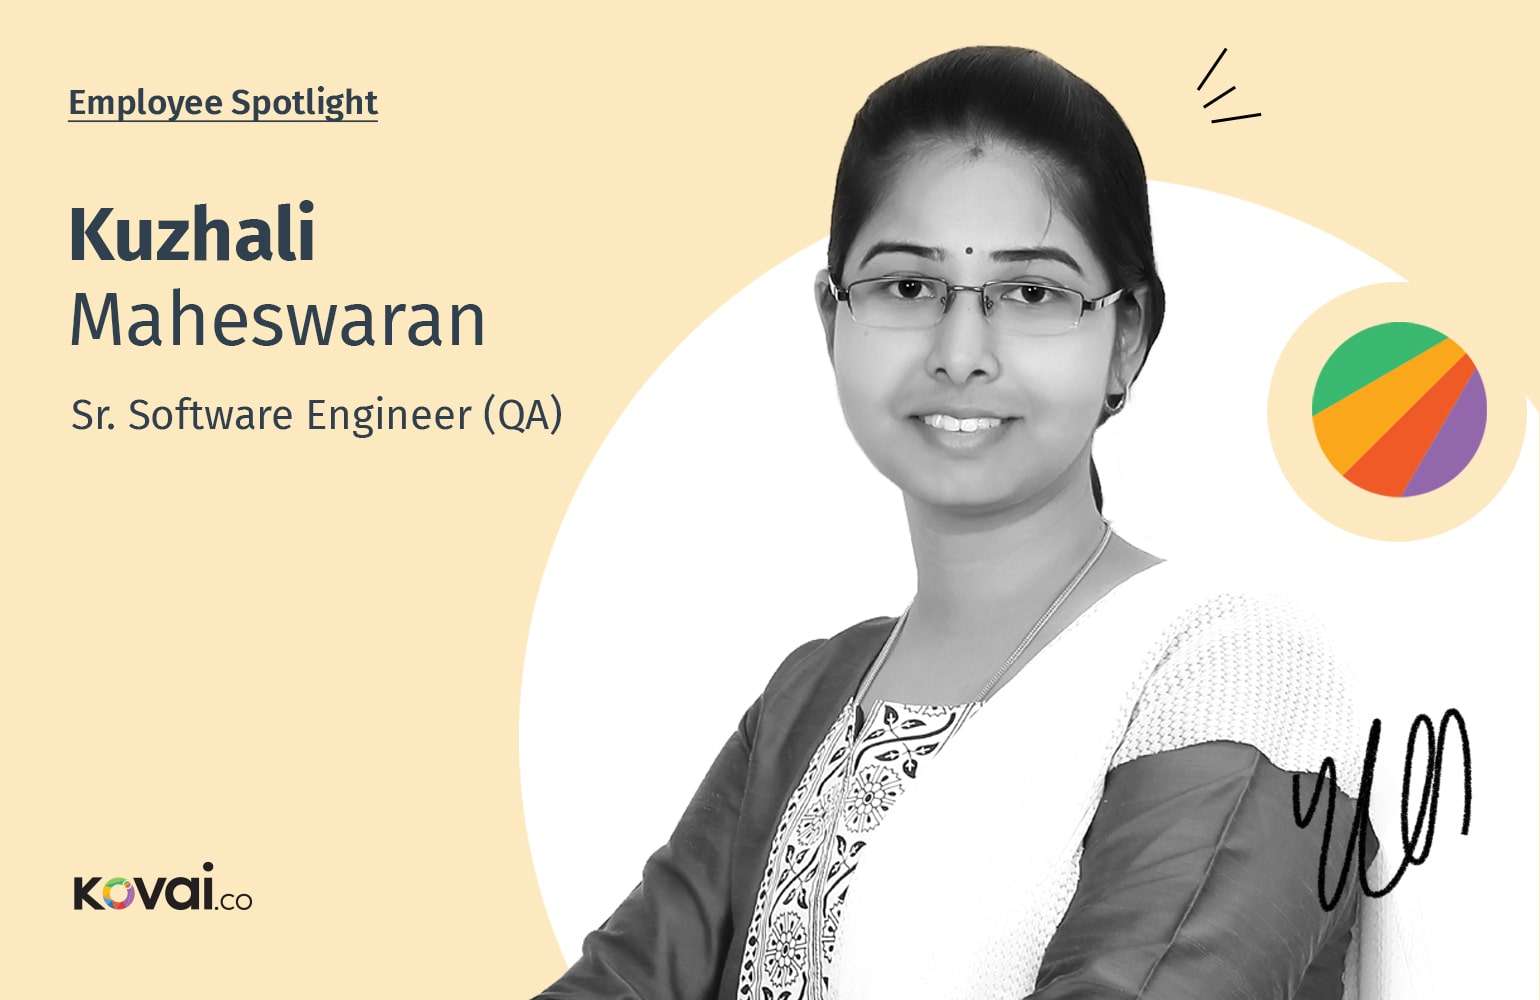 Employee Spotlight: Kuzhali Maheswaran